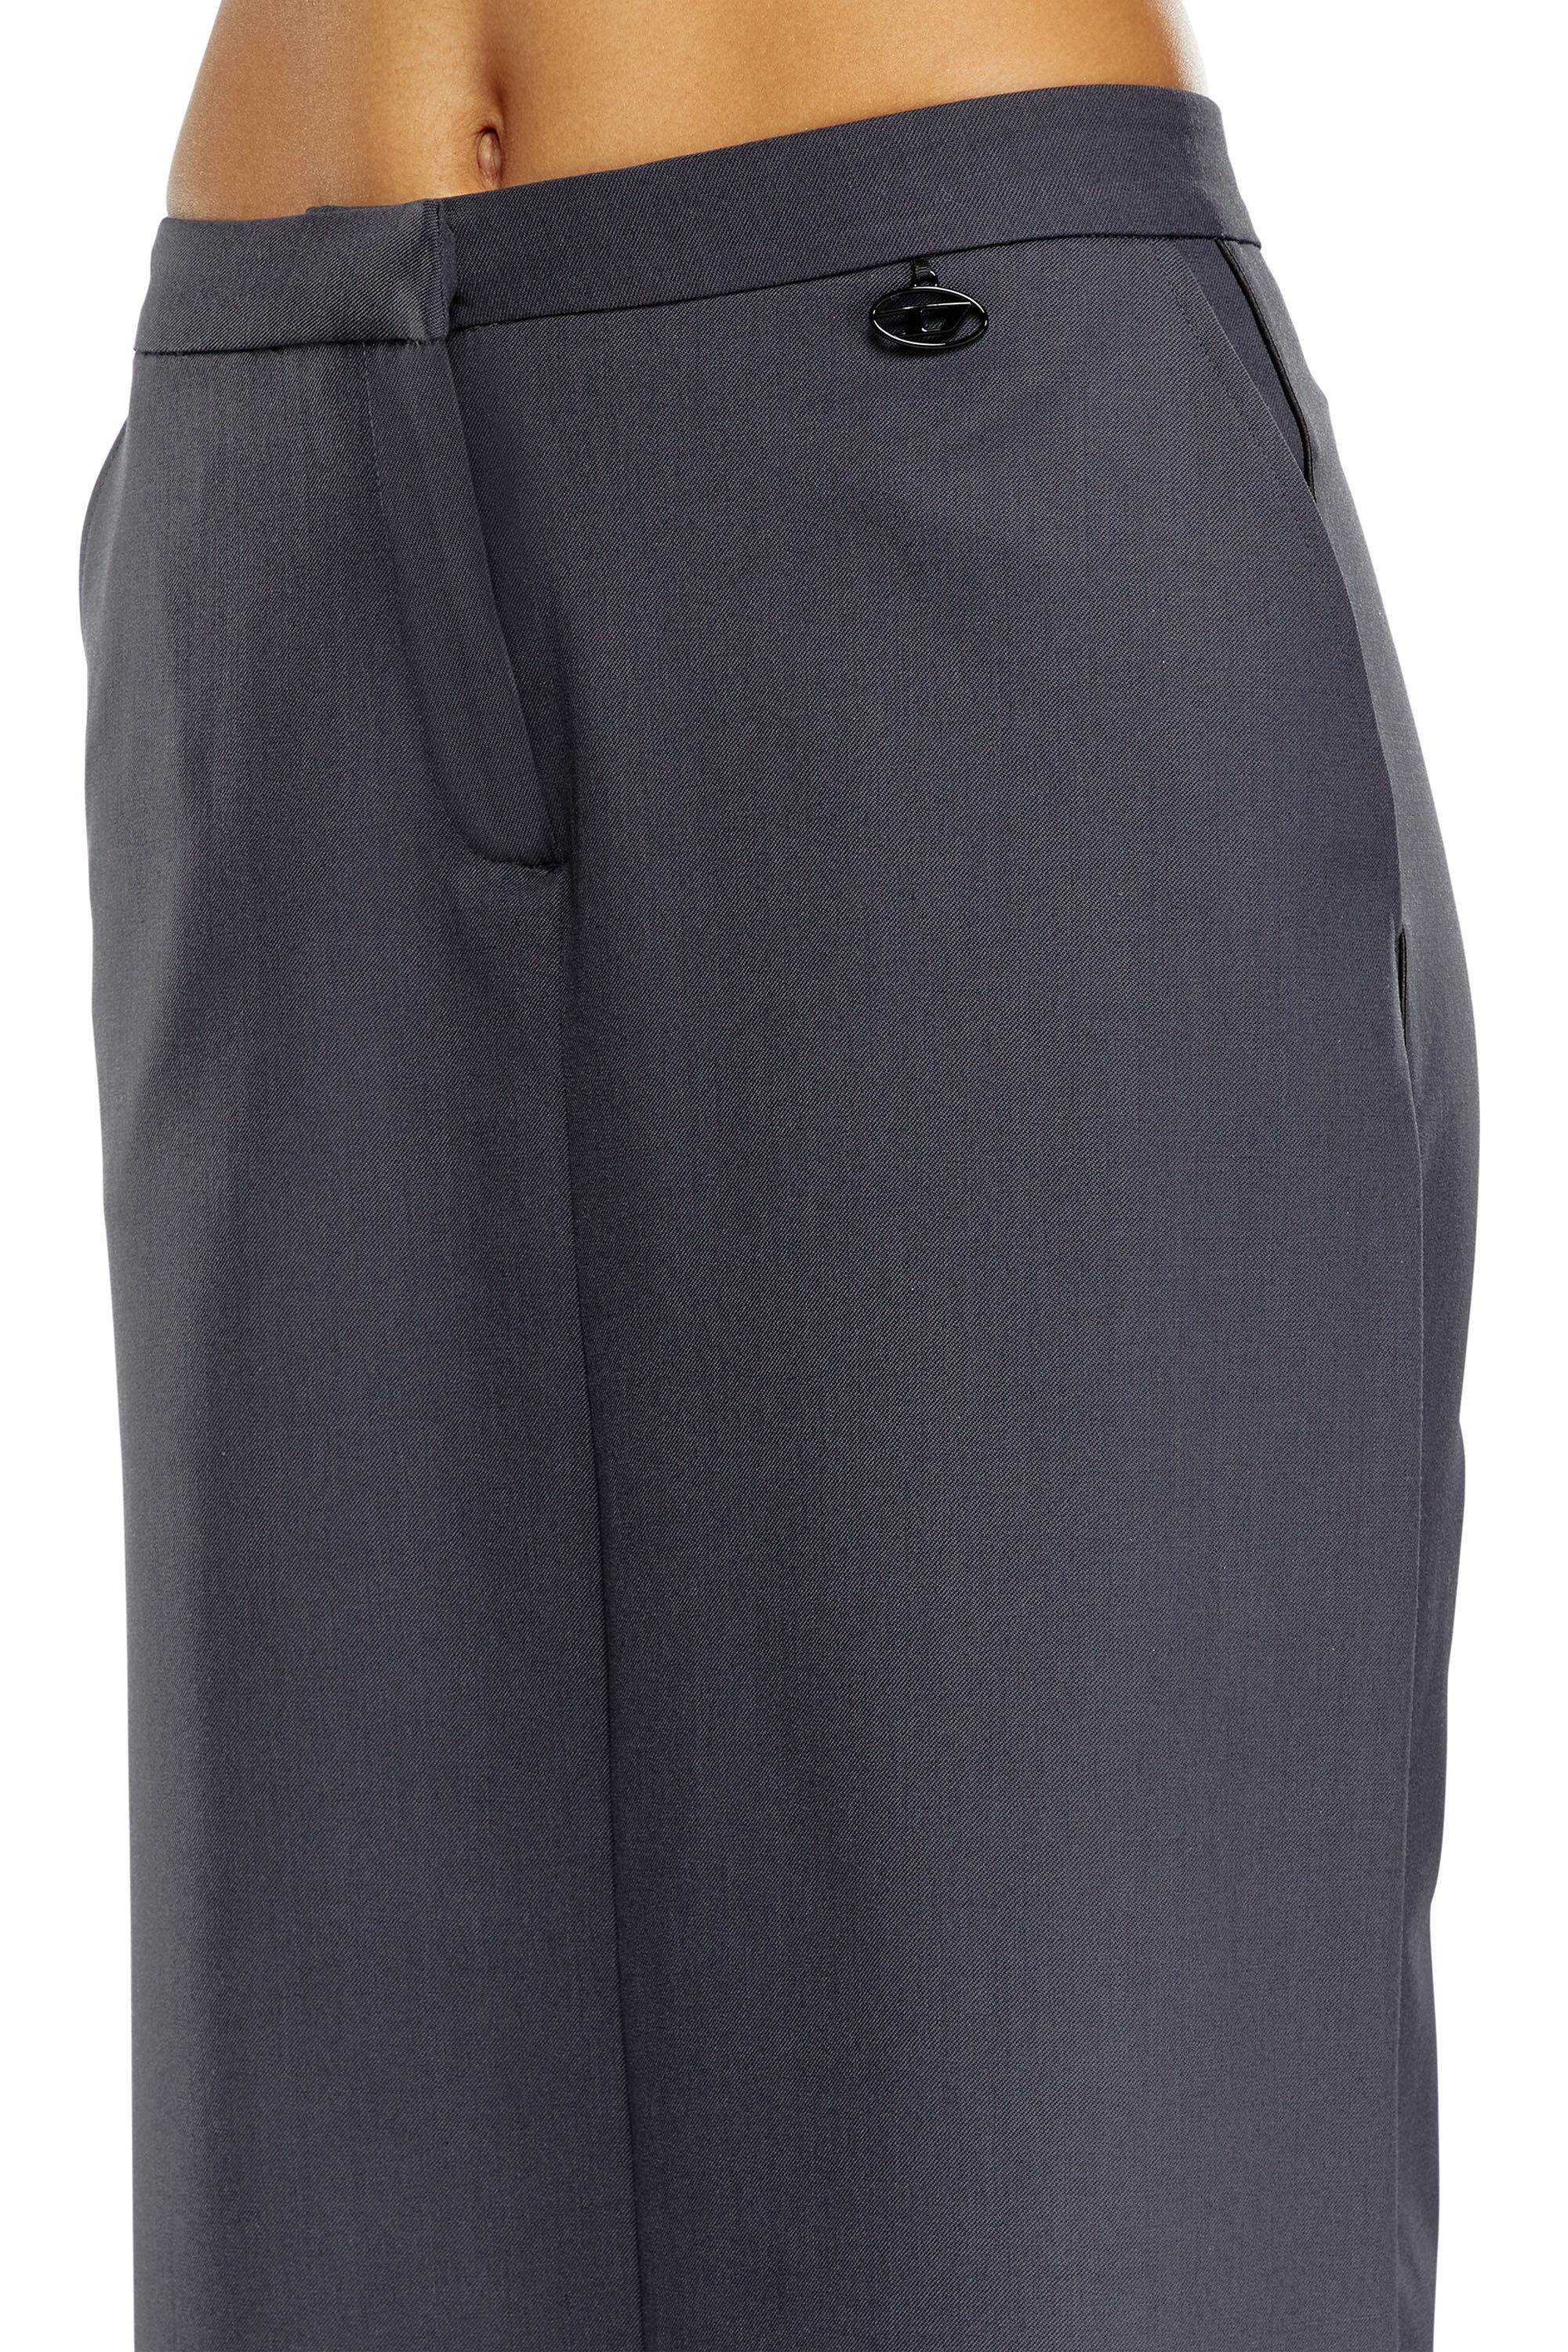 Diesel - P-EARL, Woman Hybrid skirt-pants in wool blend in Grey - Image 5